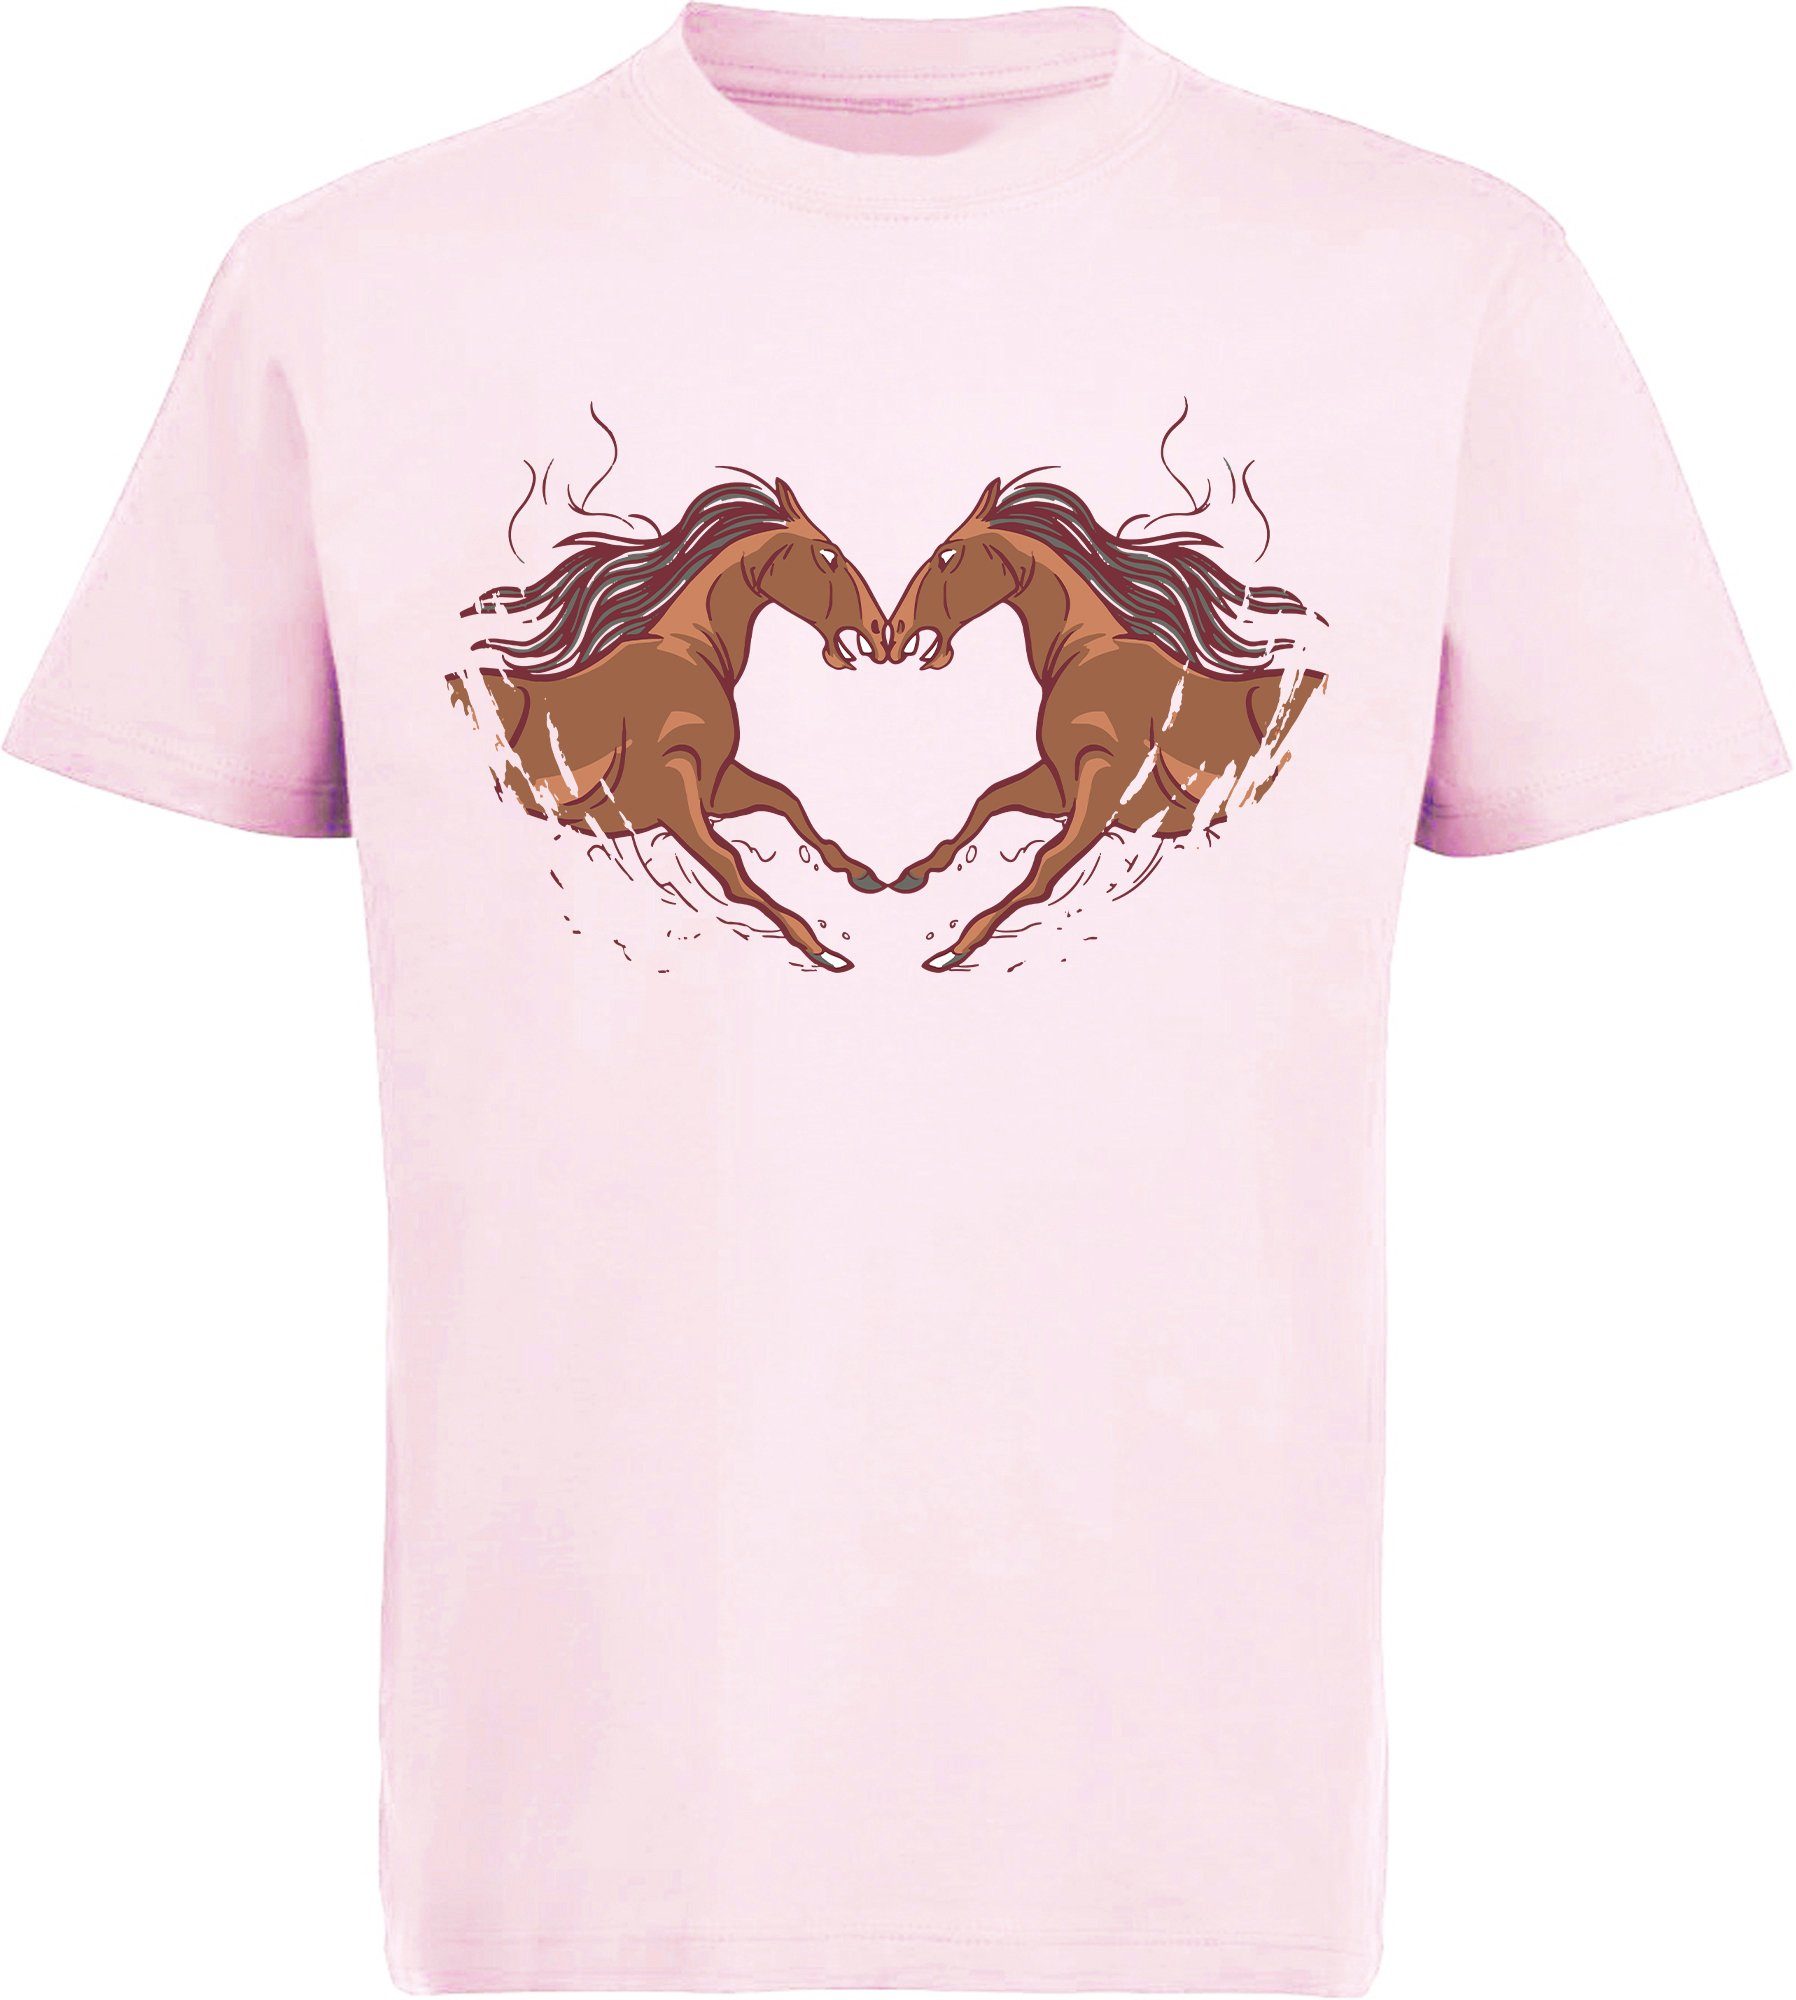 MyDesign24 Print-Shirt bedrucktes Mädchen T-Shirt zwei Pferde die ein Herz ergeben Baumwollshirt mit Aufdruck, weiß, schwarz, rot, rosa, i134